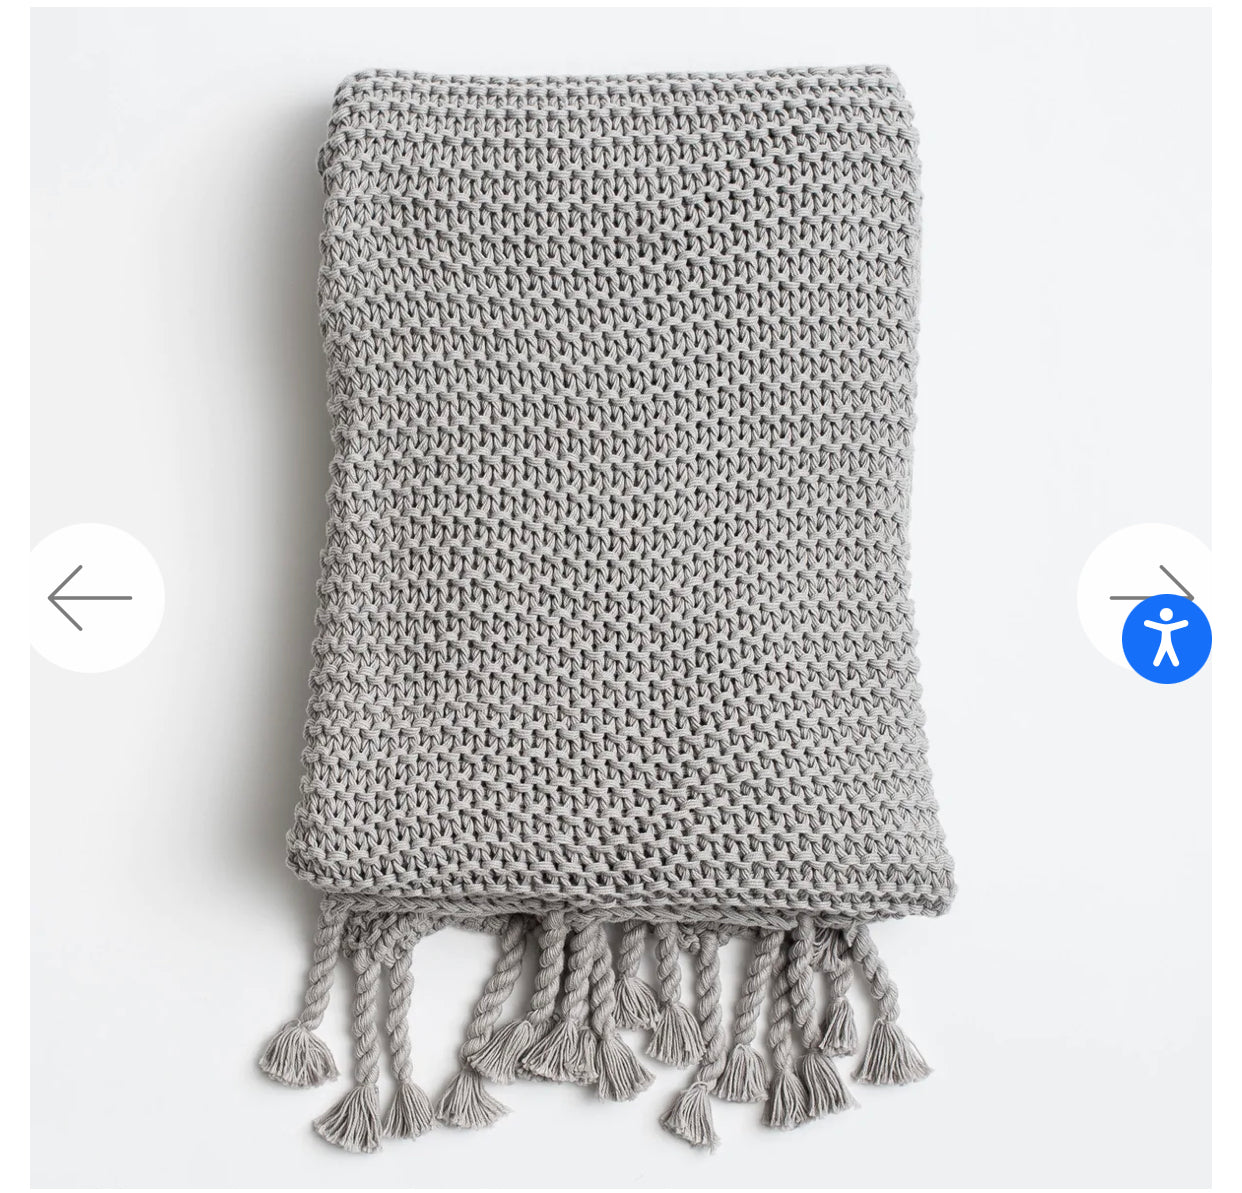 Zestt Comfy Knit Throw Gray